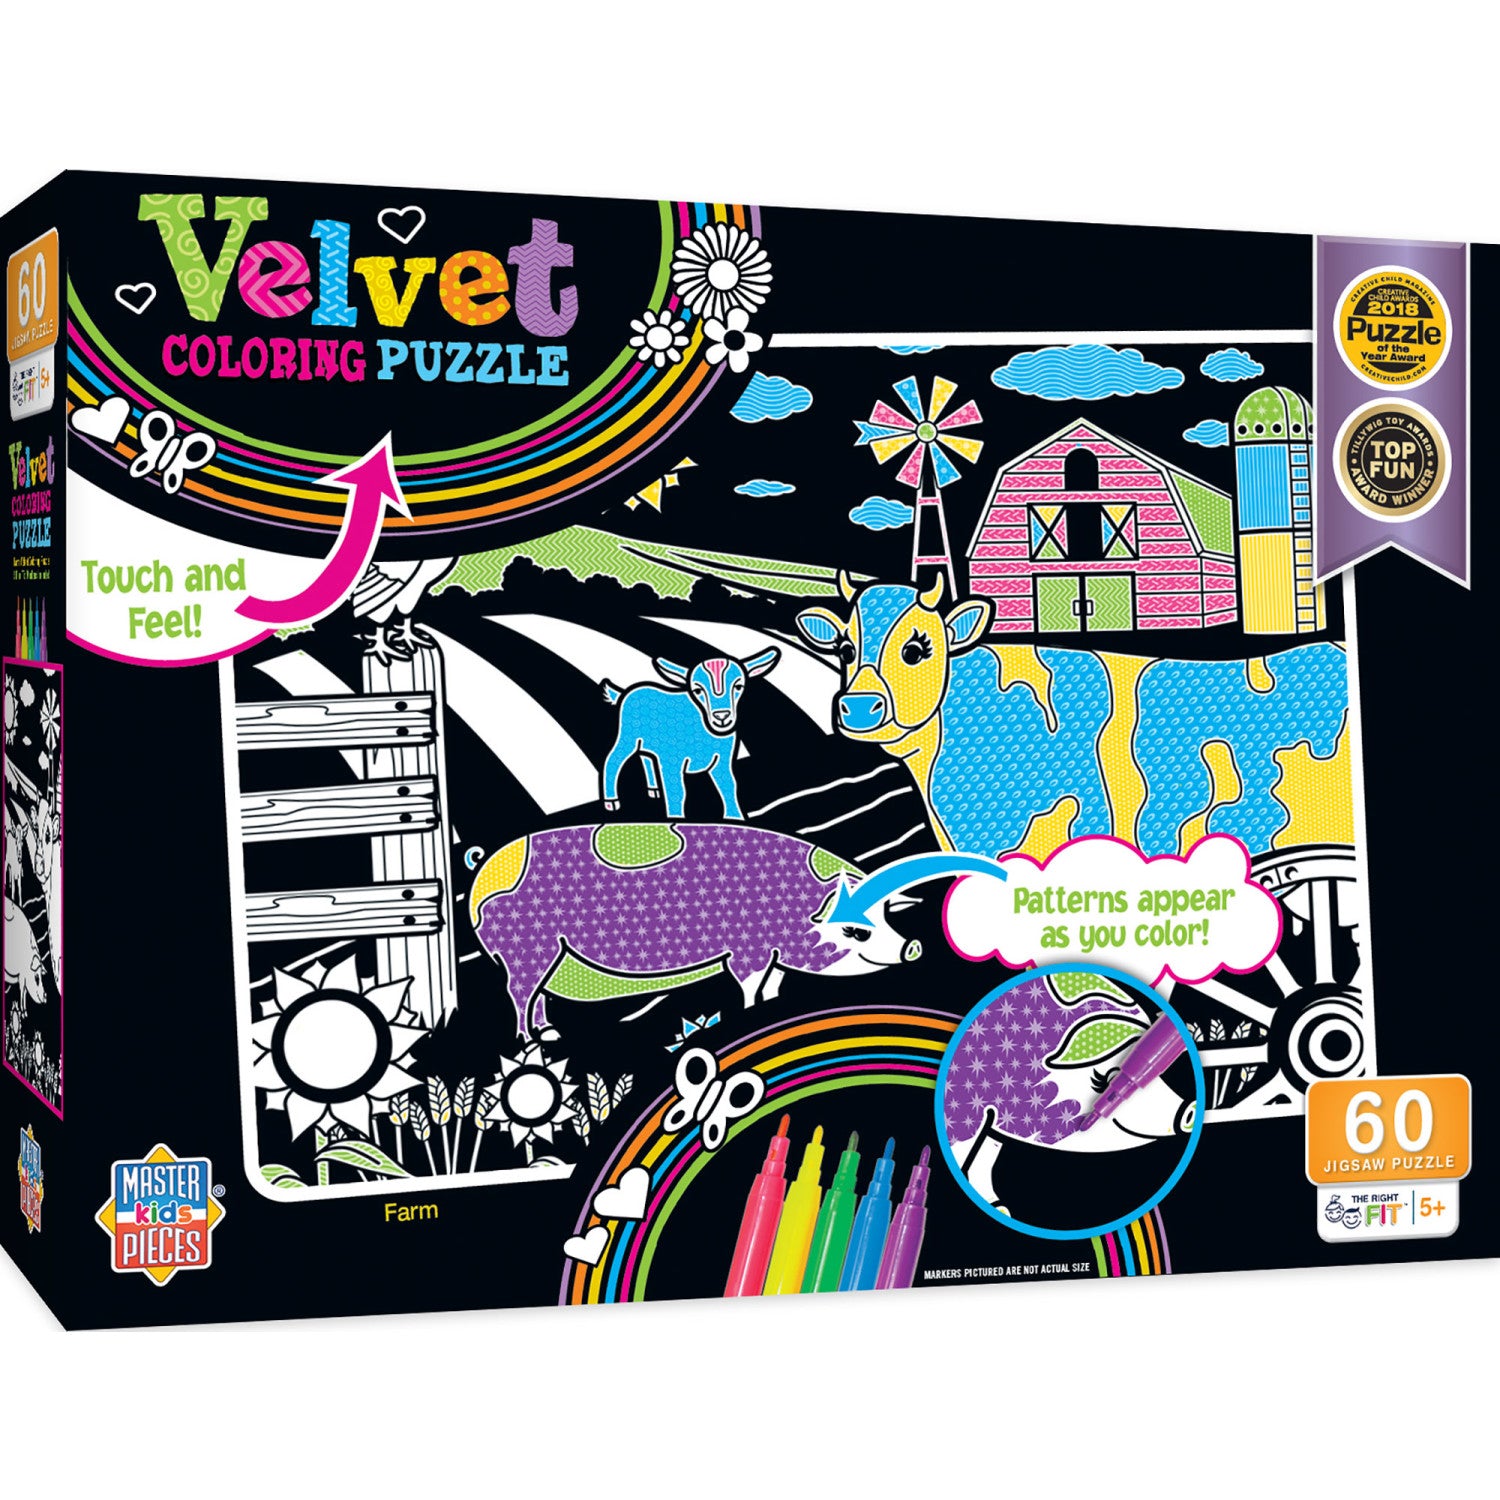 Velvet Coloring - Farm 60 Piece Jigsaw Puzzle